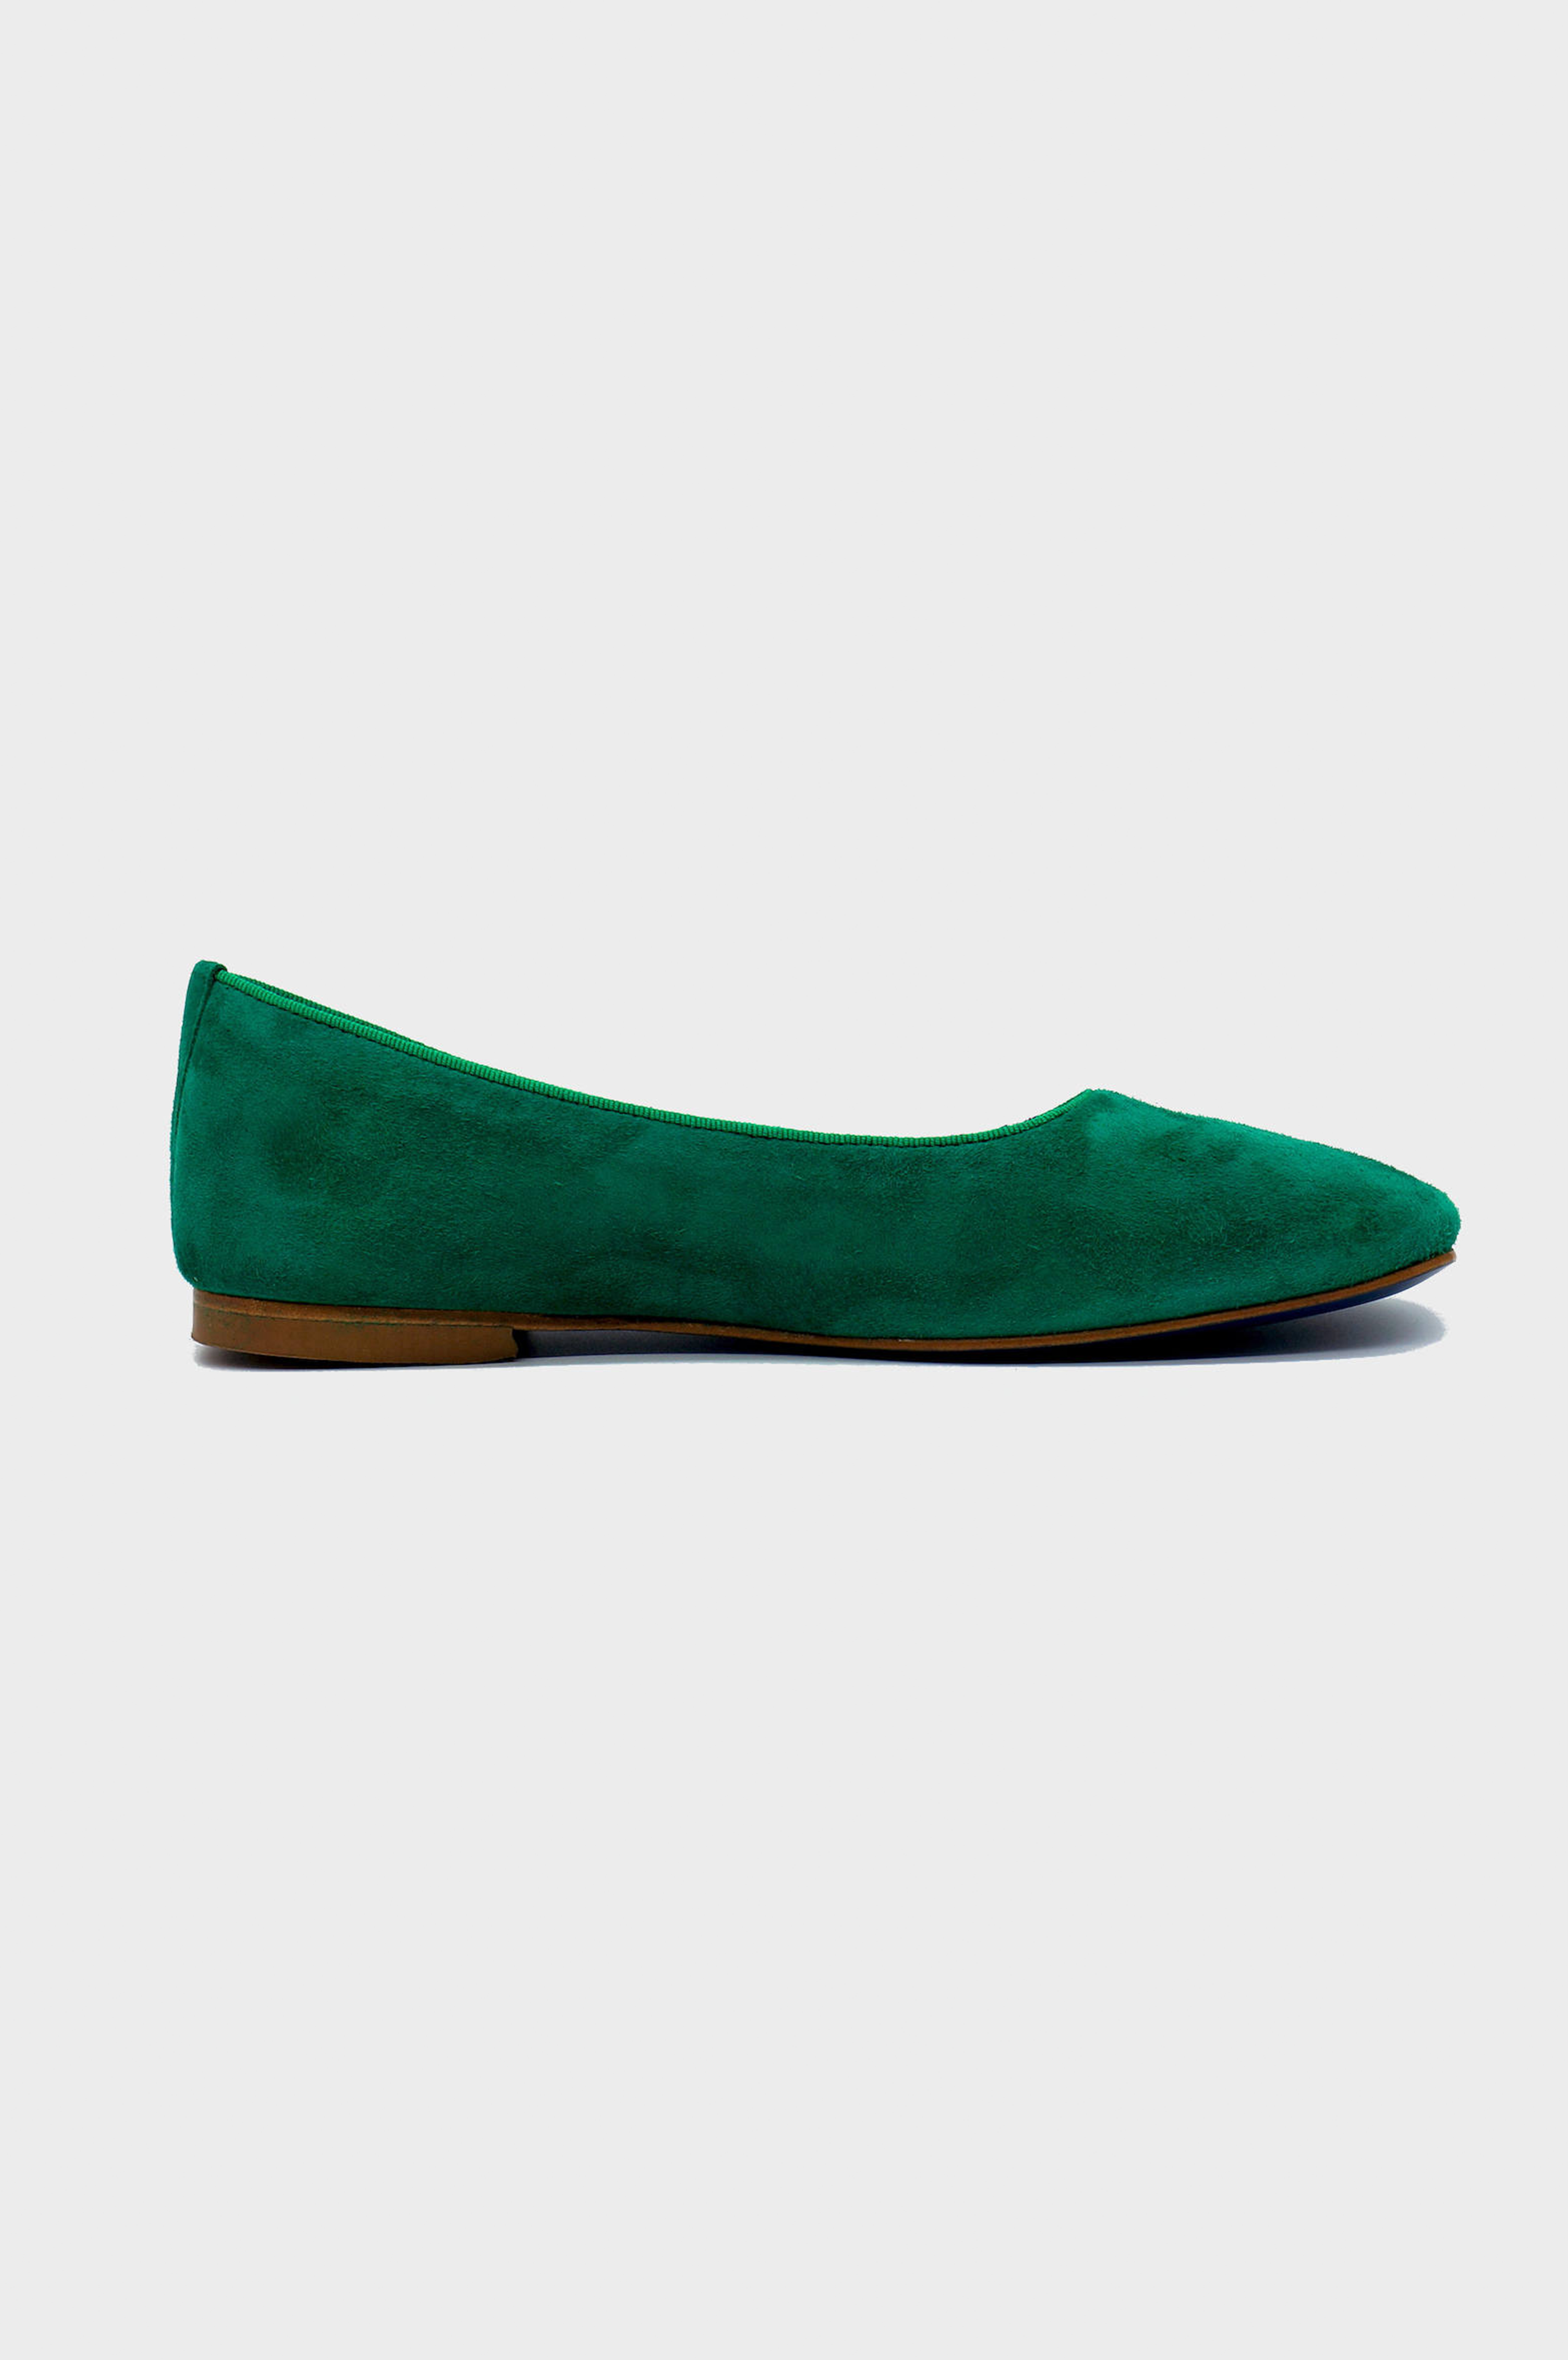 NUR ITALY Giulia Suede Square-Toe Flat, color, EMERALD GREEN #color_torino emerald